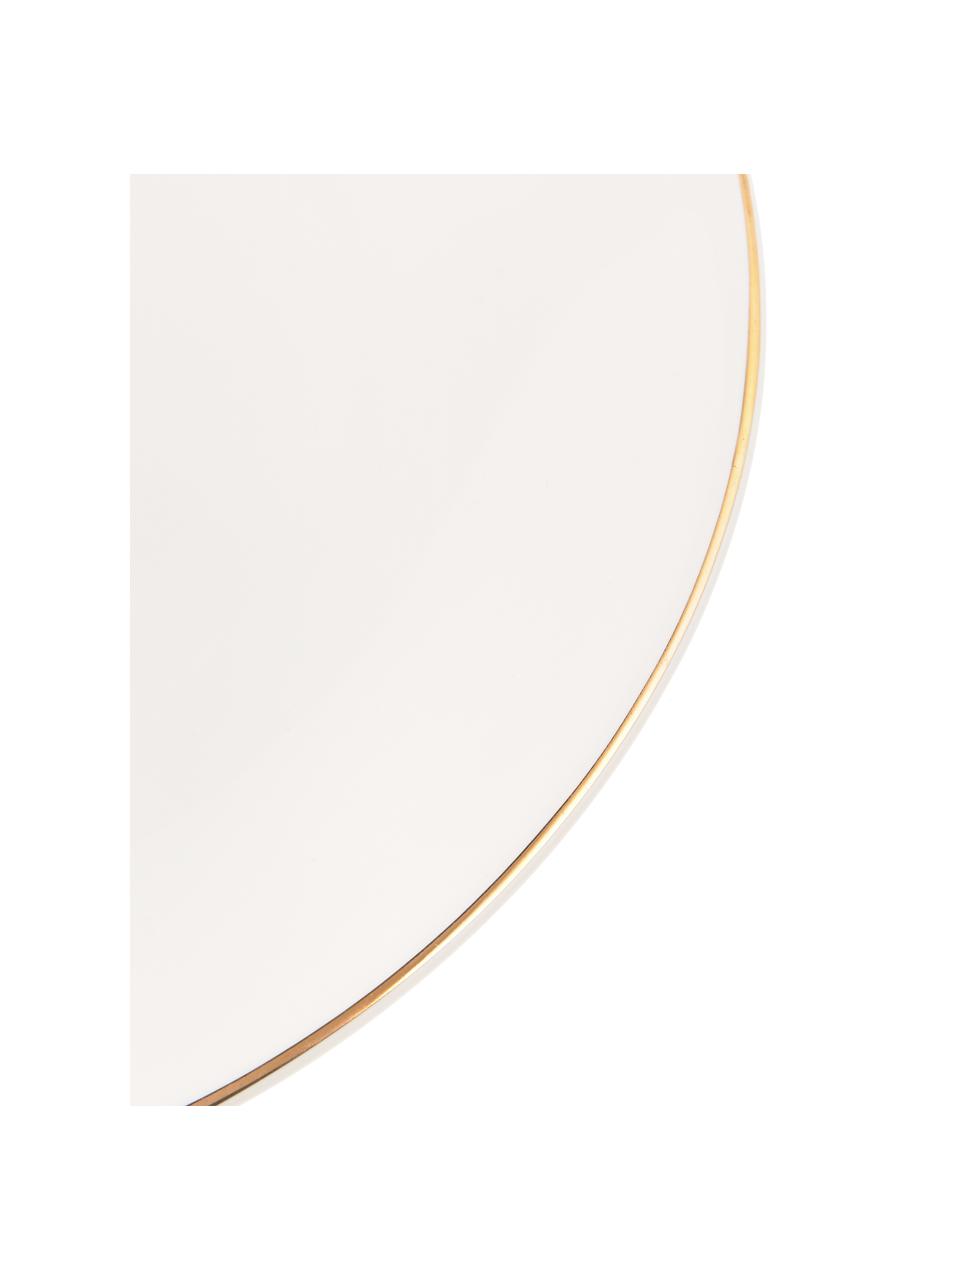 Platos llanos artesanales Allure, 6 uds., Cerámica, Blanco, dorado, Ø 26 cm